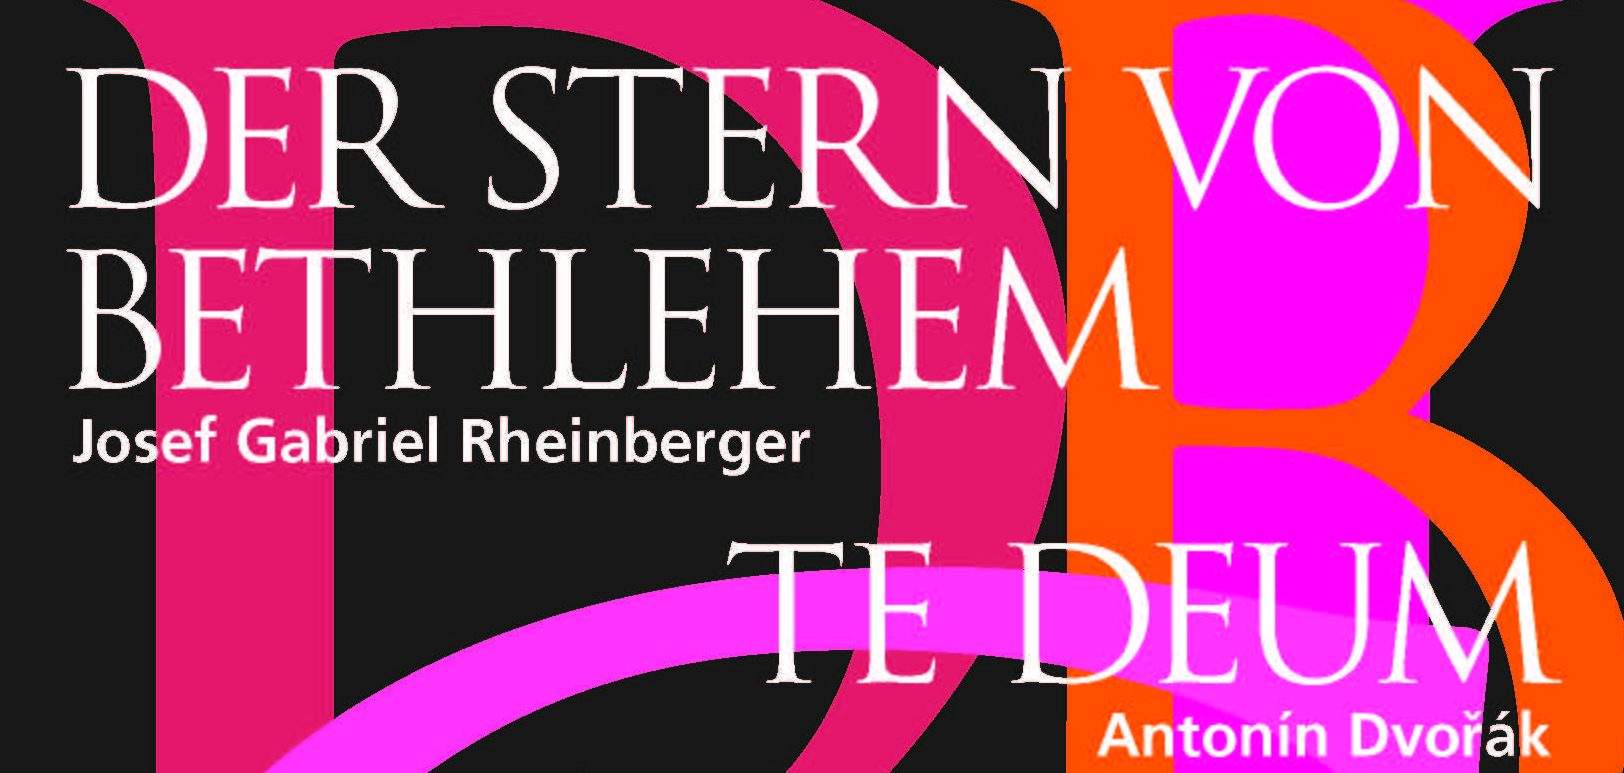 26.11.16 20.15 Uhr. J.G. Rheinberger, Der Stern von Bethlehem, Klosterkirche Einsiedeln